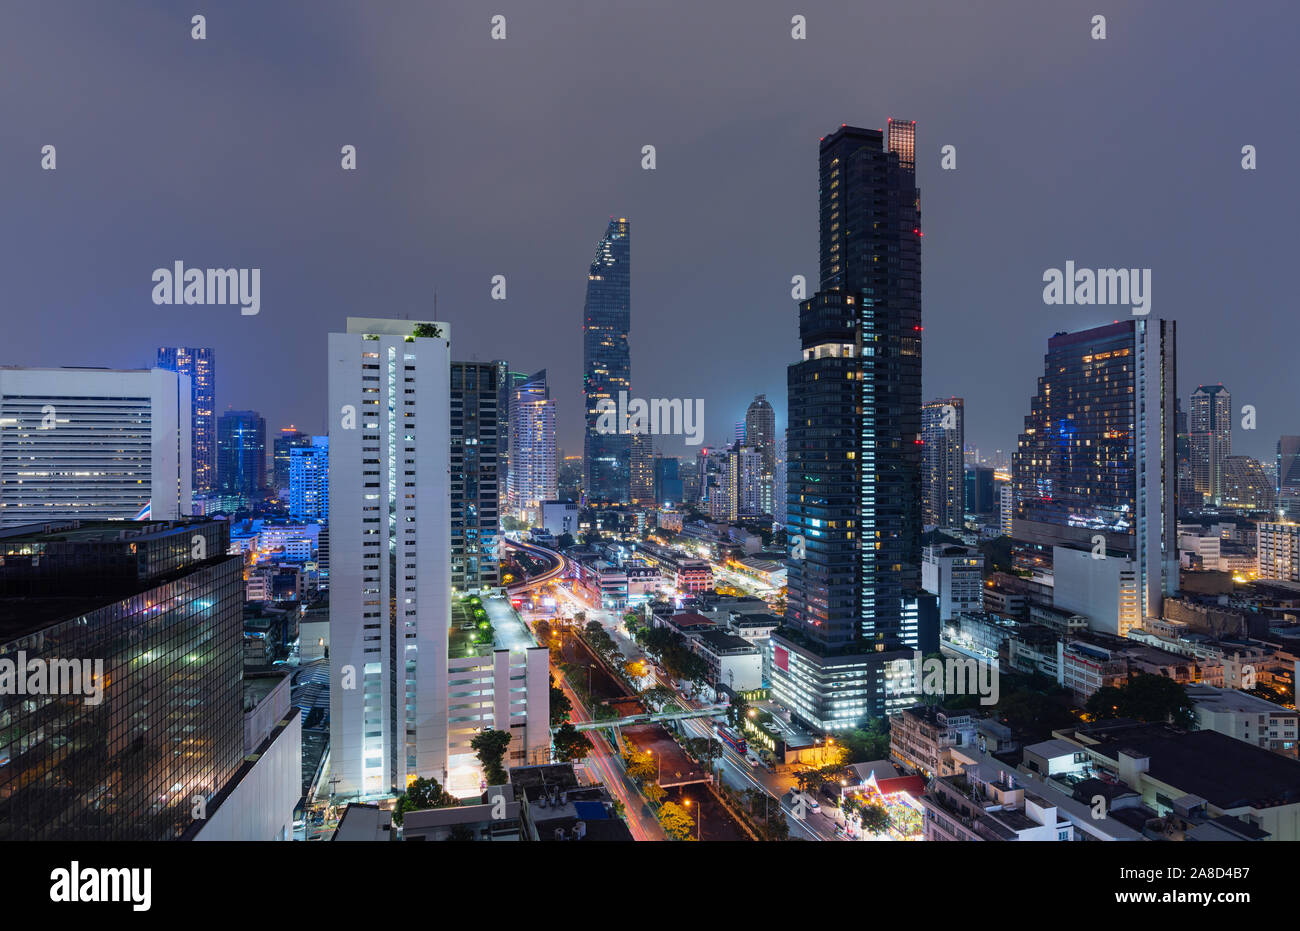 Bangkok city, Thailand at night Stock Photo